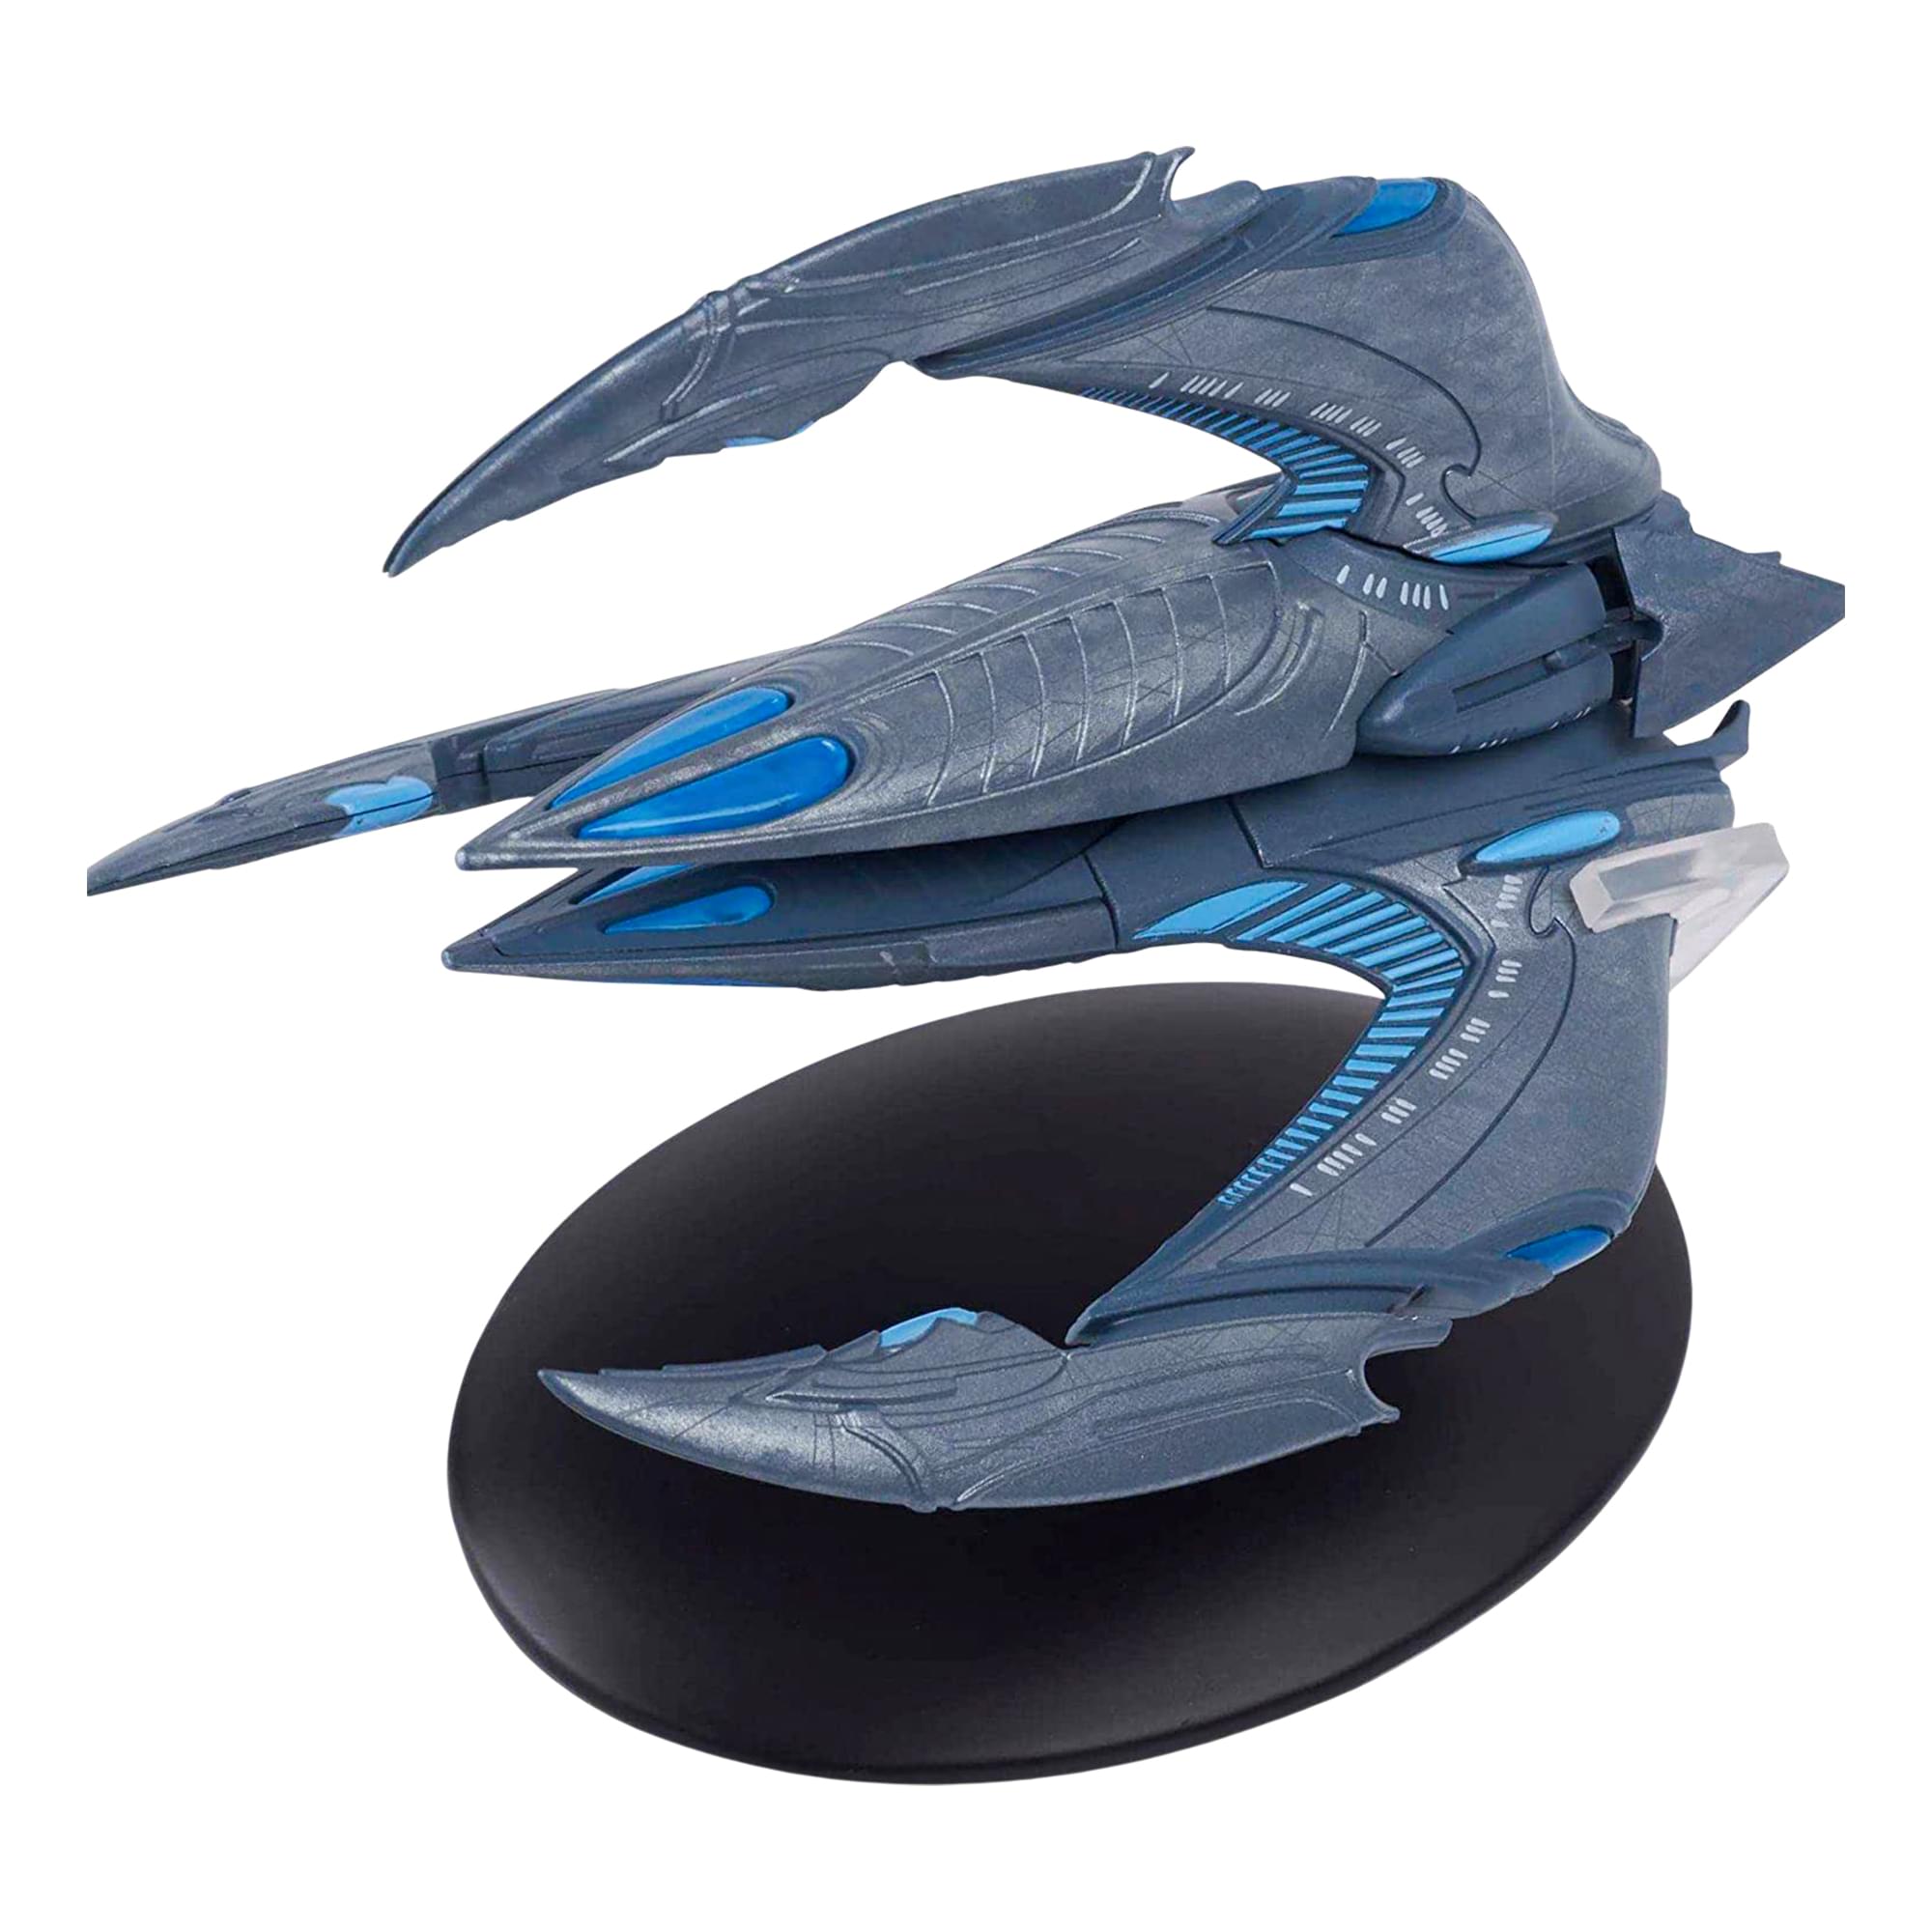 Star Trek Starship Replica , Xindi Insectoid Ship